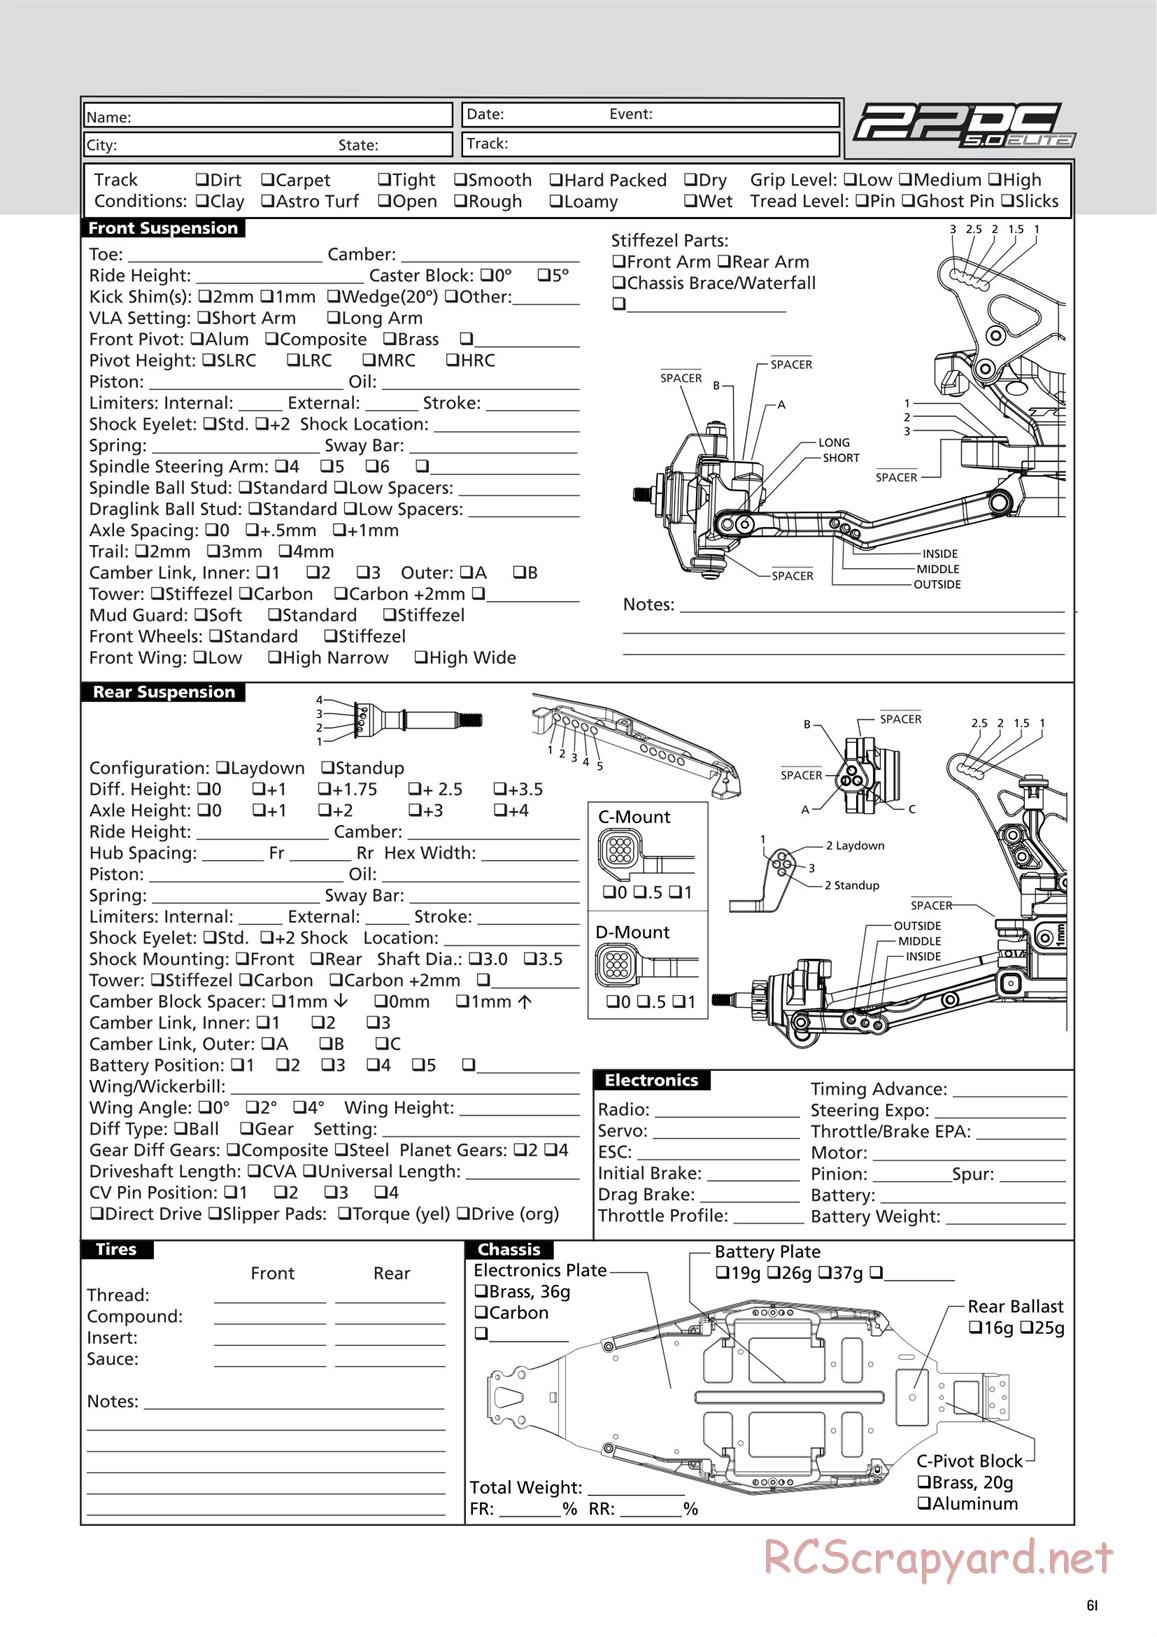 Team Losi - TLR 22 5.0 DC Elite Race - Manual - Page 61